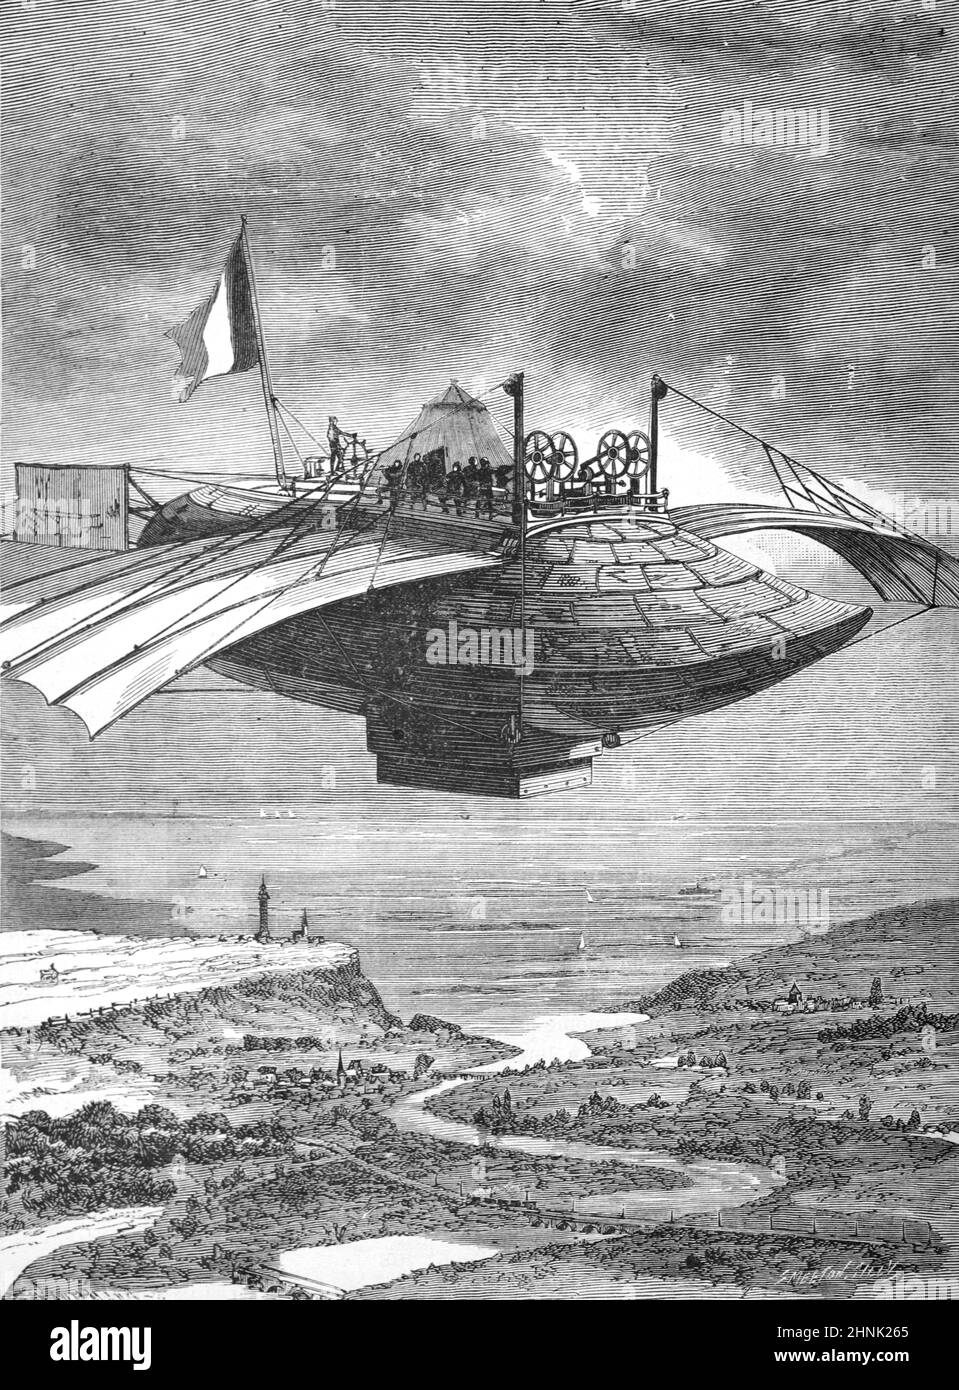 L'impressione dell'artista di una macchina volante francese fantasy, surreale o futuristica conosciuta come Celeste France. Illustrazione o incisione vintage 1883 Foto Stock